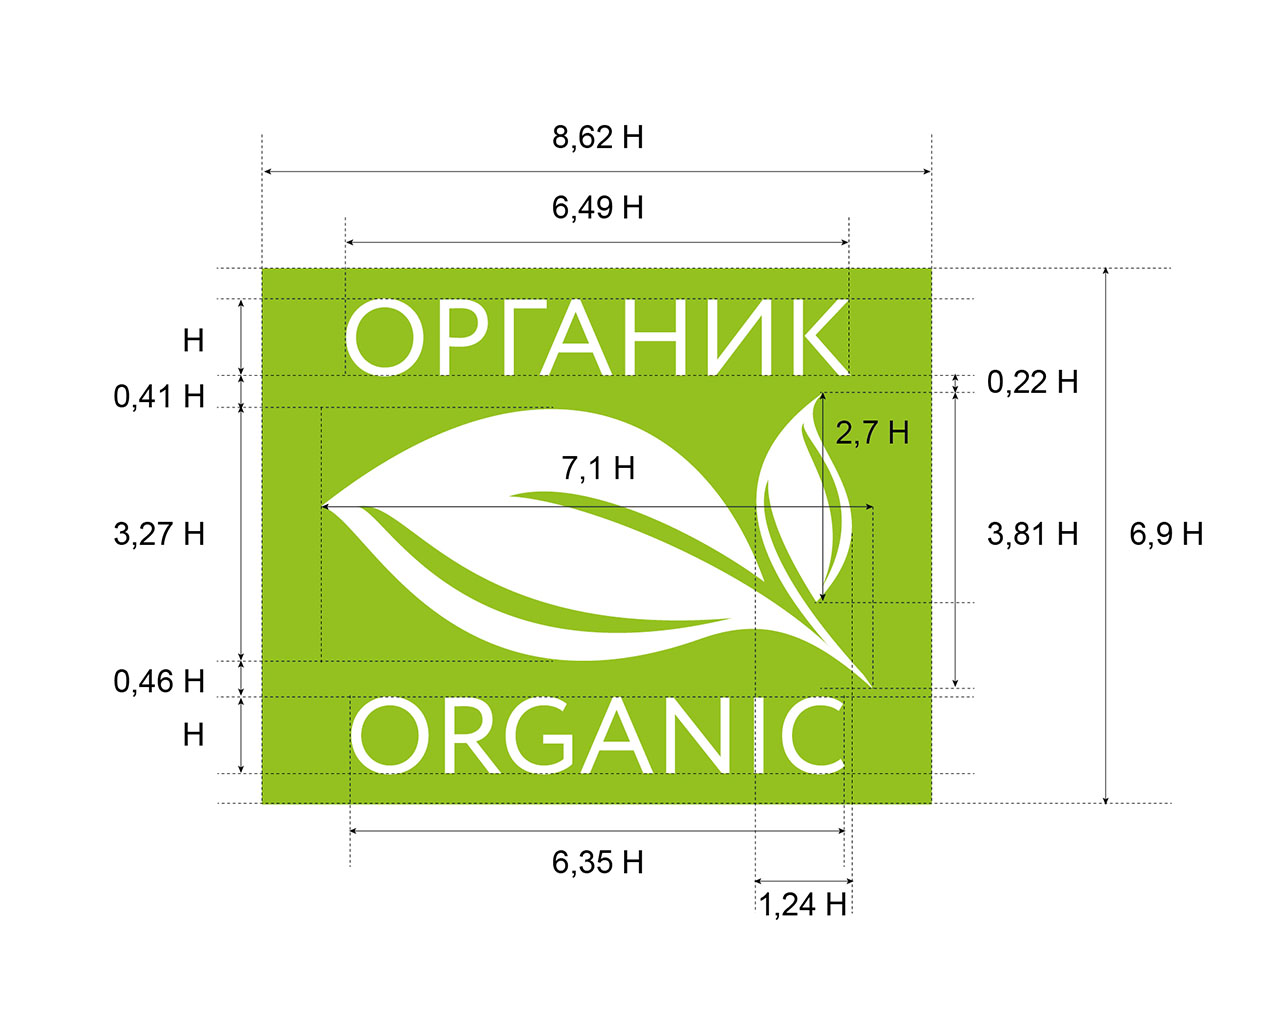 О развитии органического сельского хозяйства в России